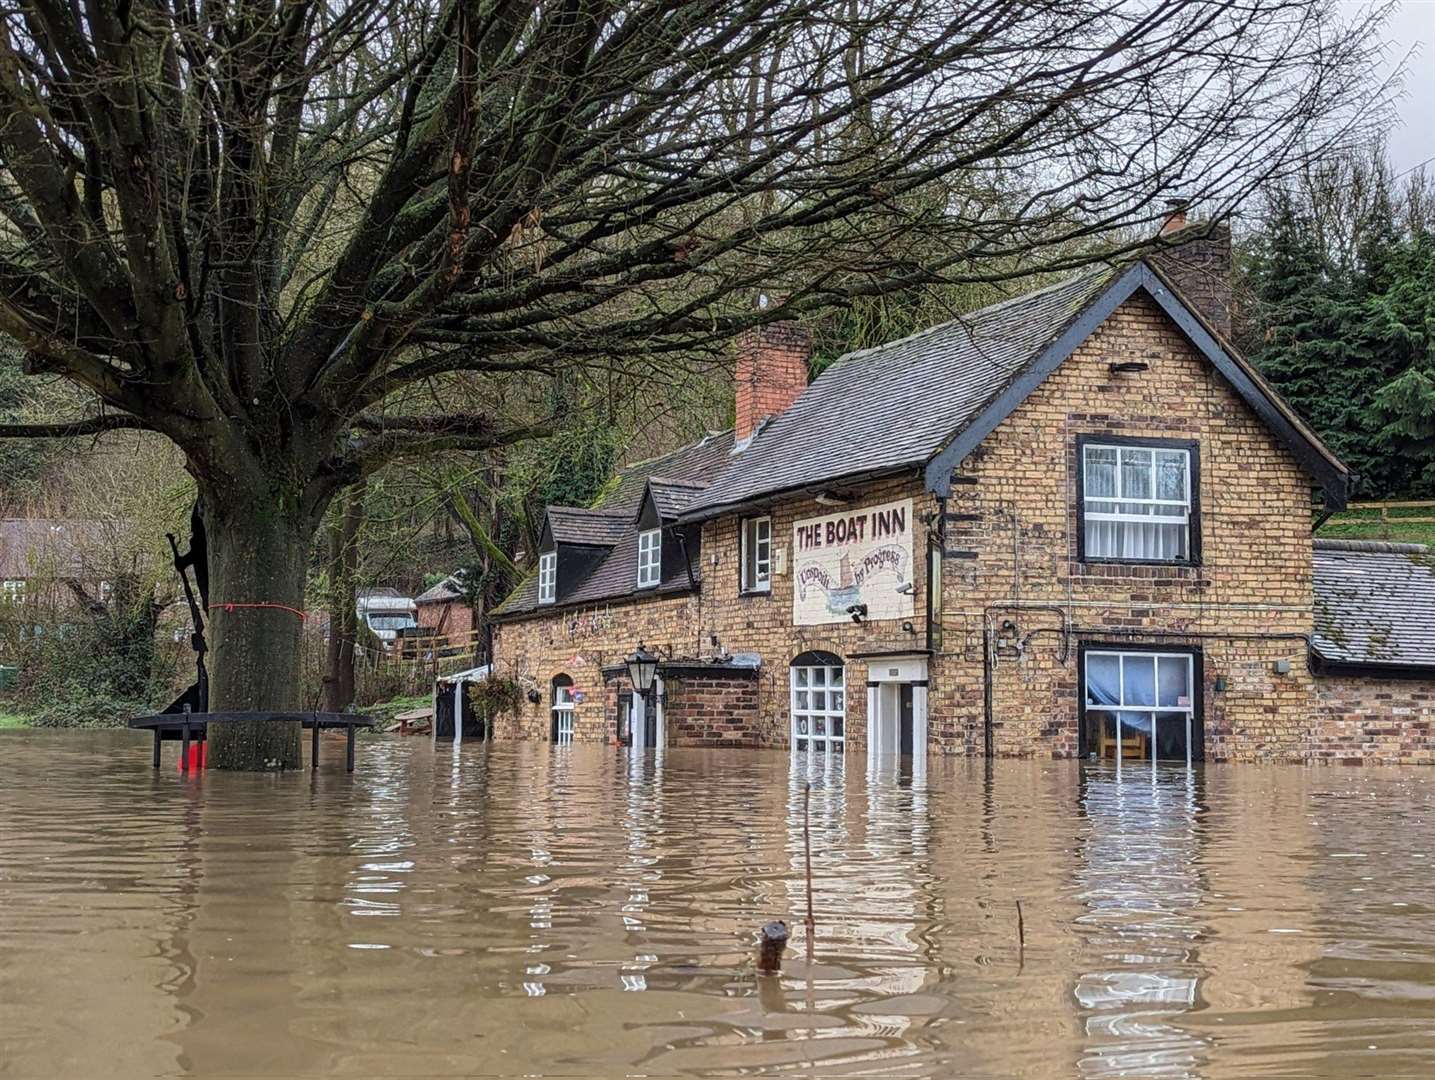 Mario Thomas said the flood on Thursday has ‘taken us by surprise’ (Liam Ball/PA)